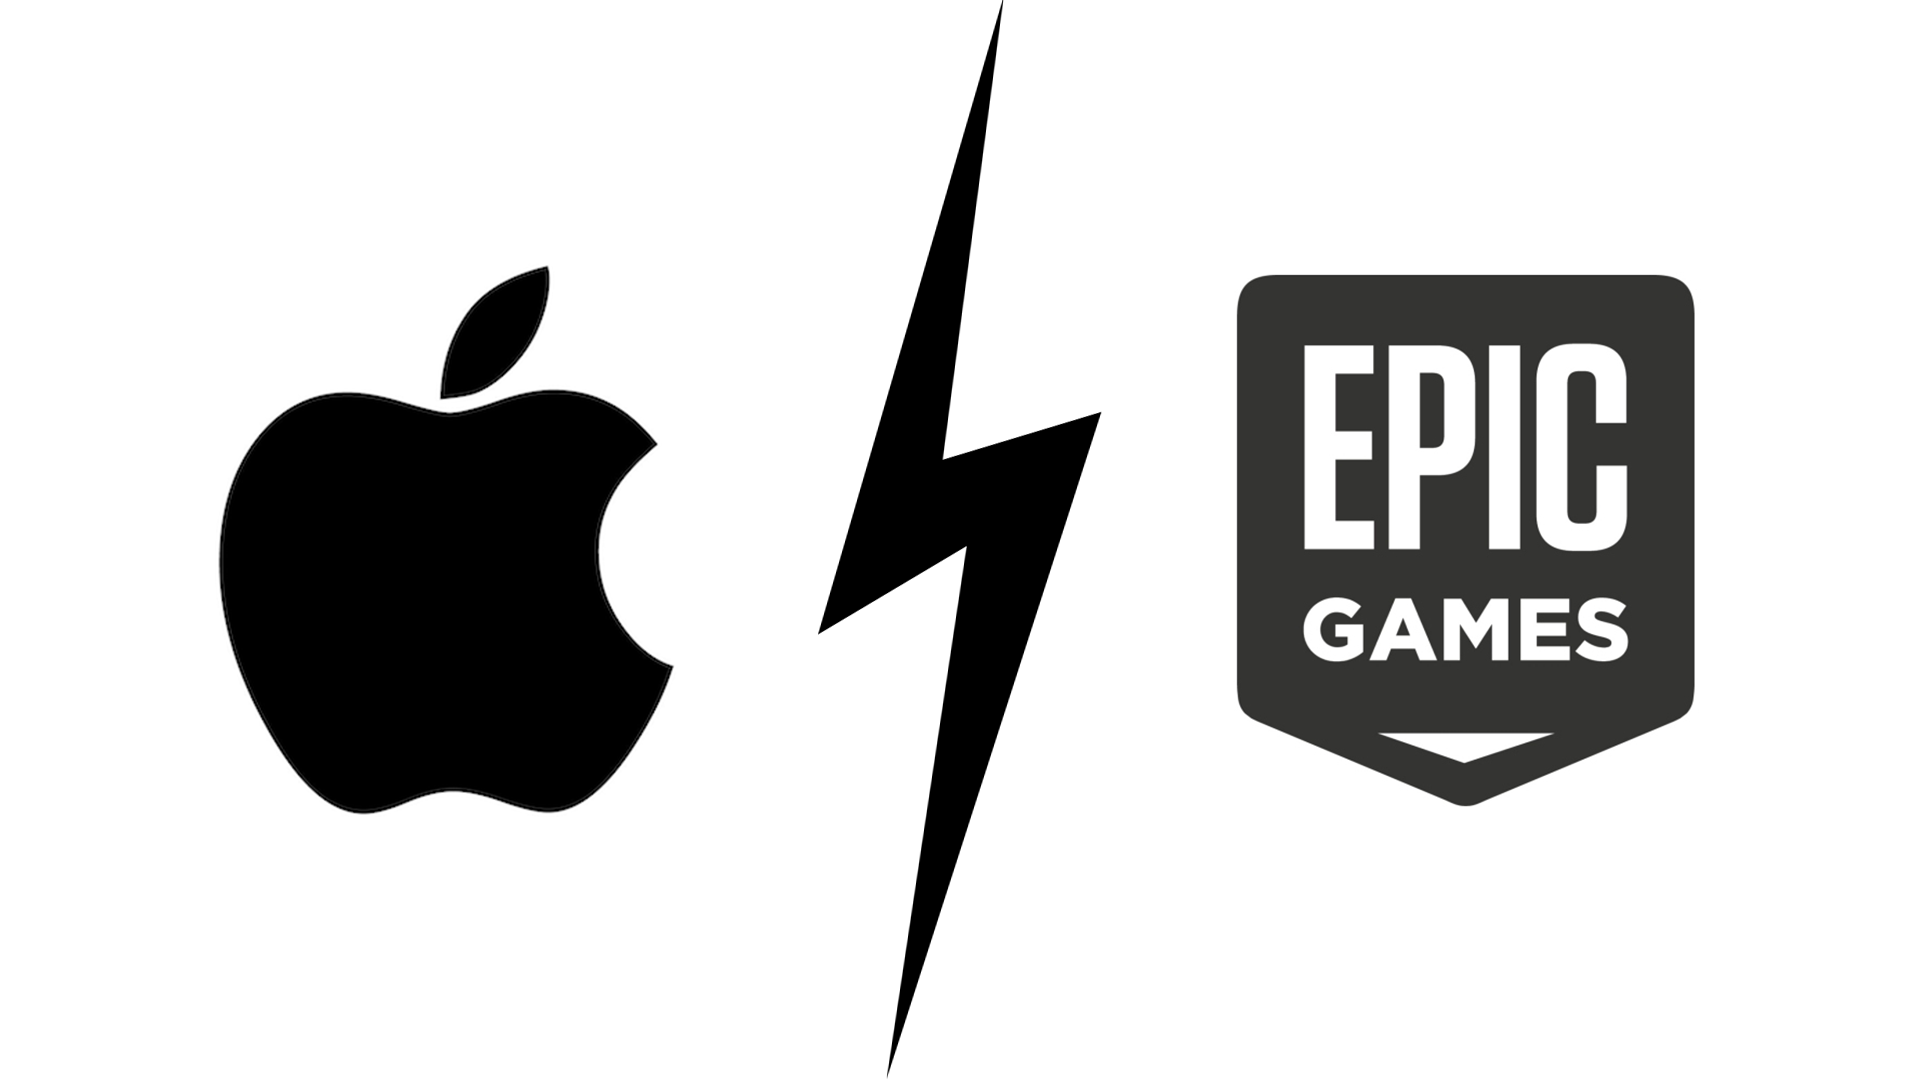 【速報】遂に決着。iOS版フォートナイトをめぐるEpic GamesとAppleの裁判の判決が下る。